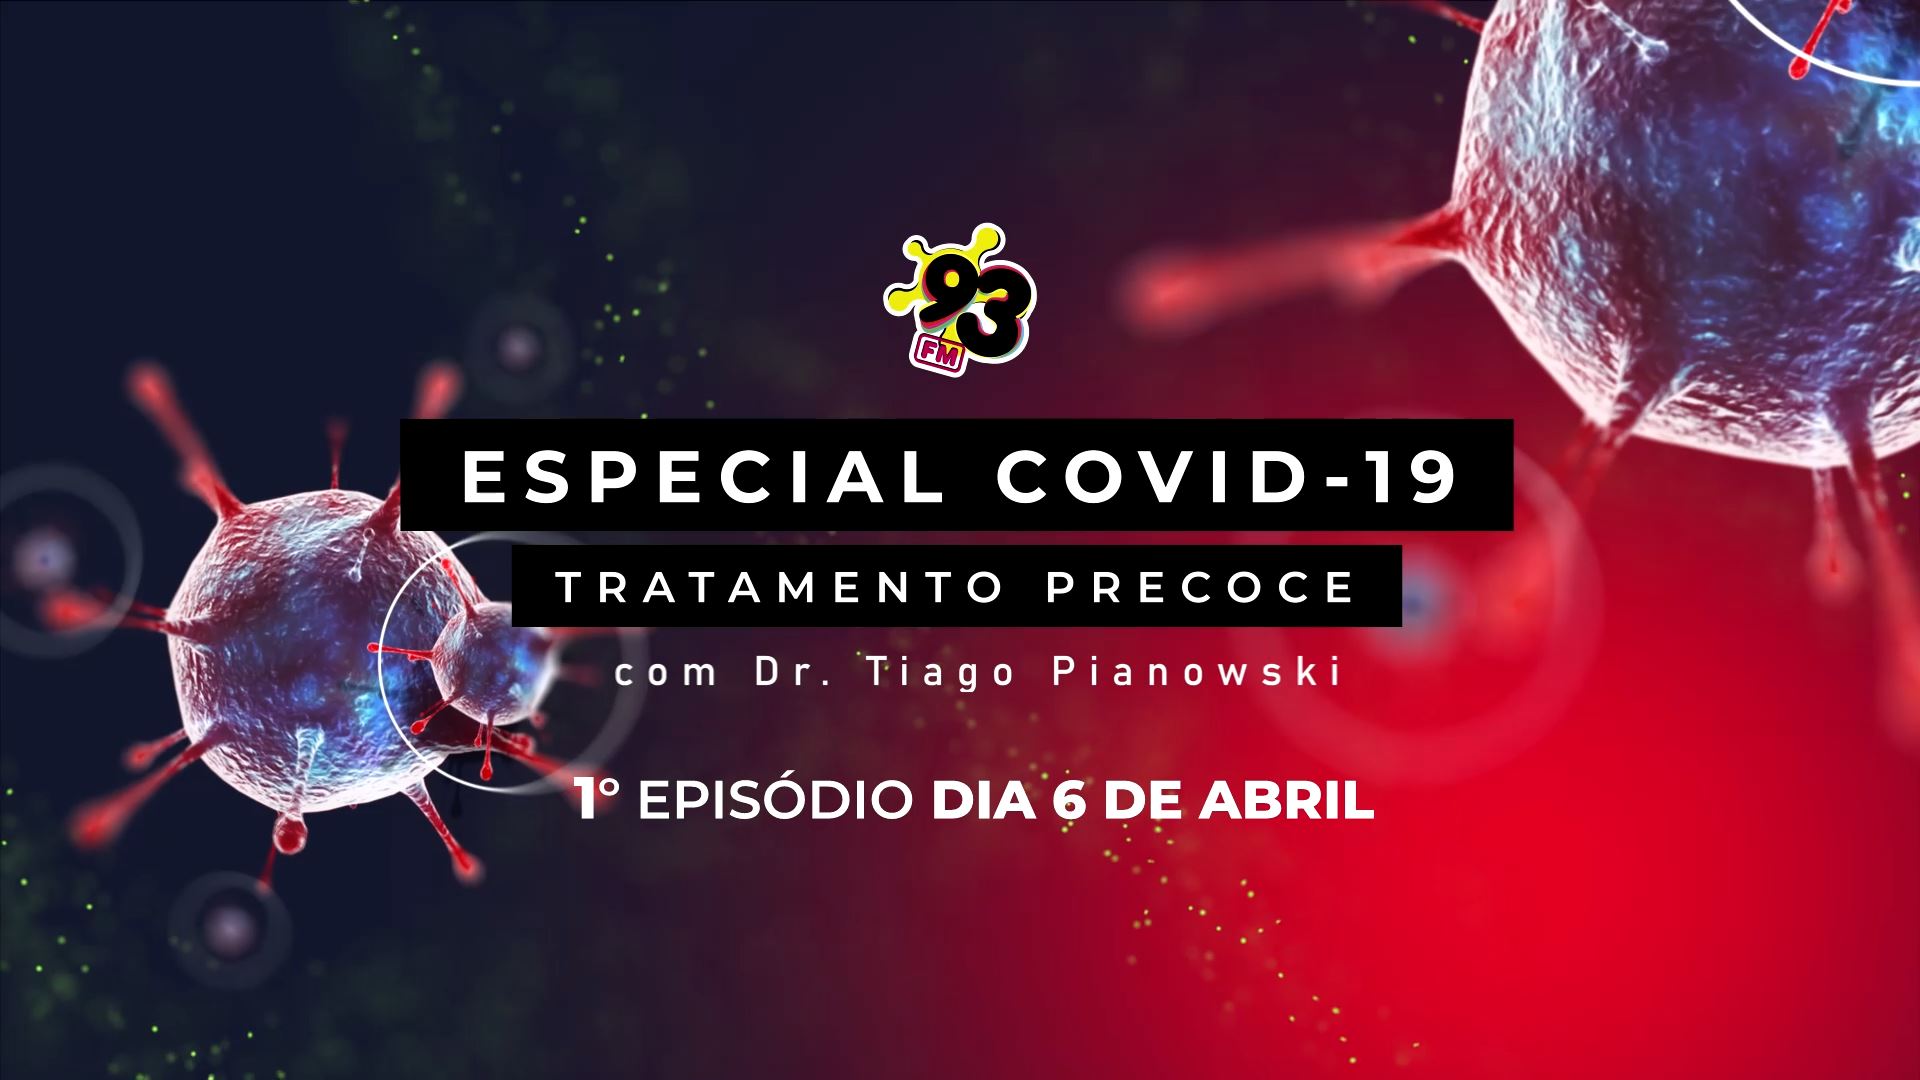 93FM lança minissérie sobre Tratamento Precoce contra a COVID-19